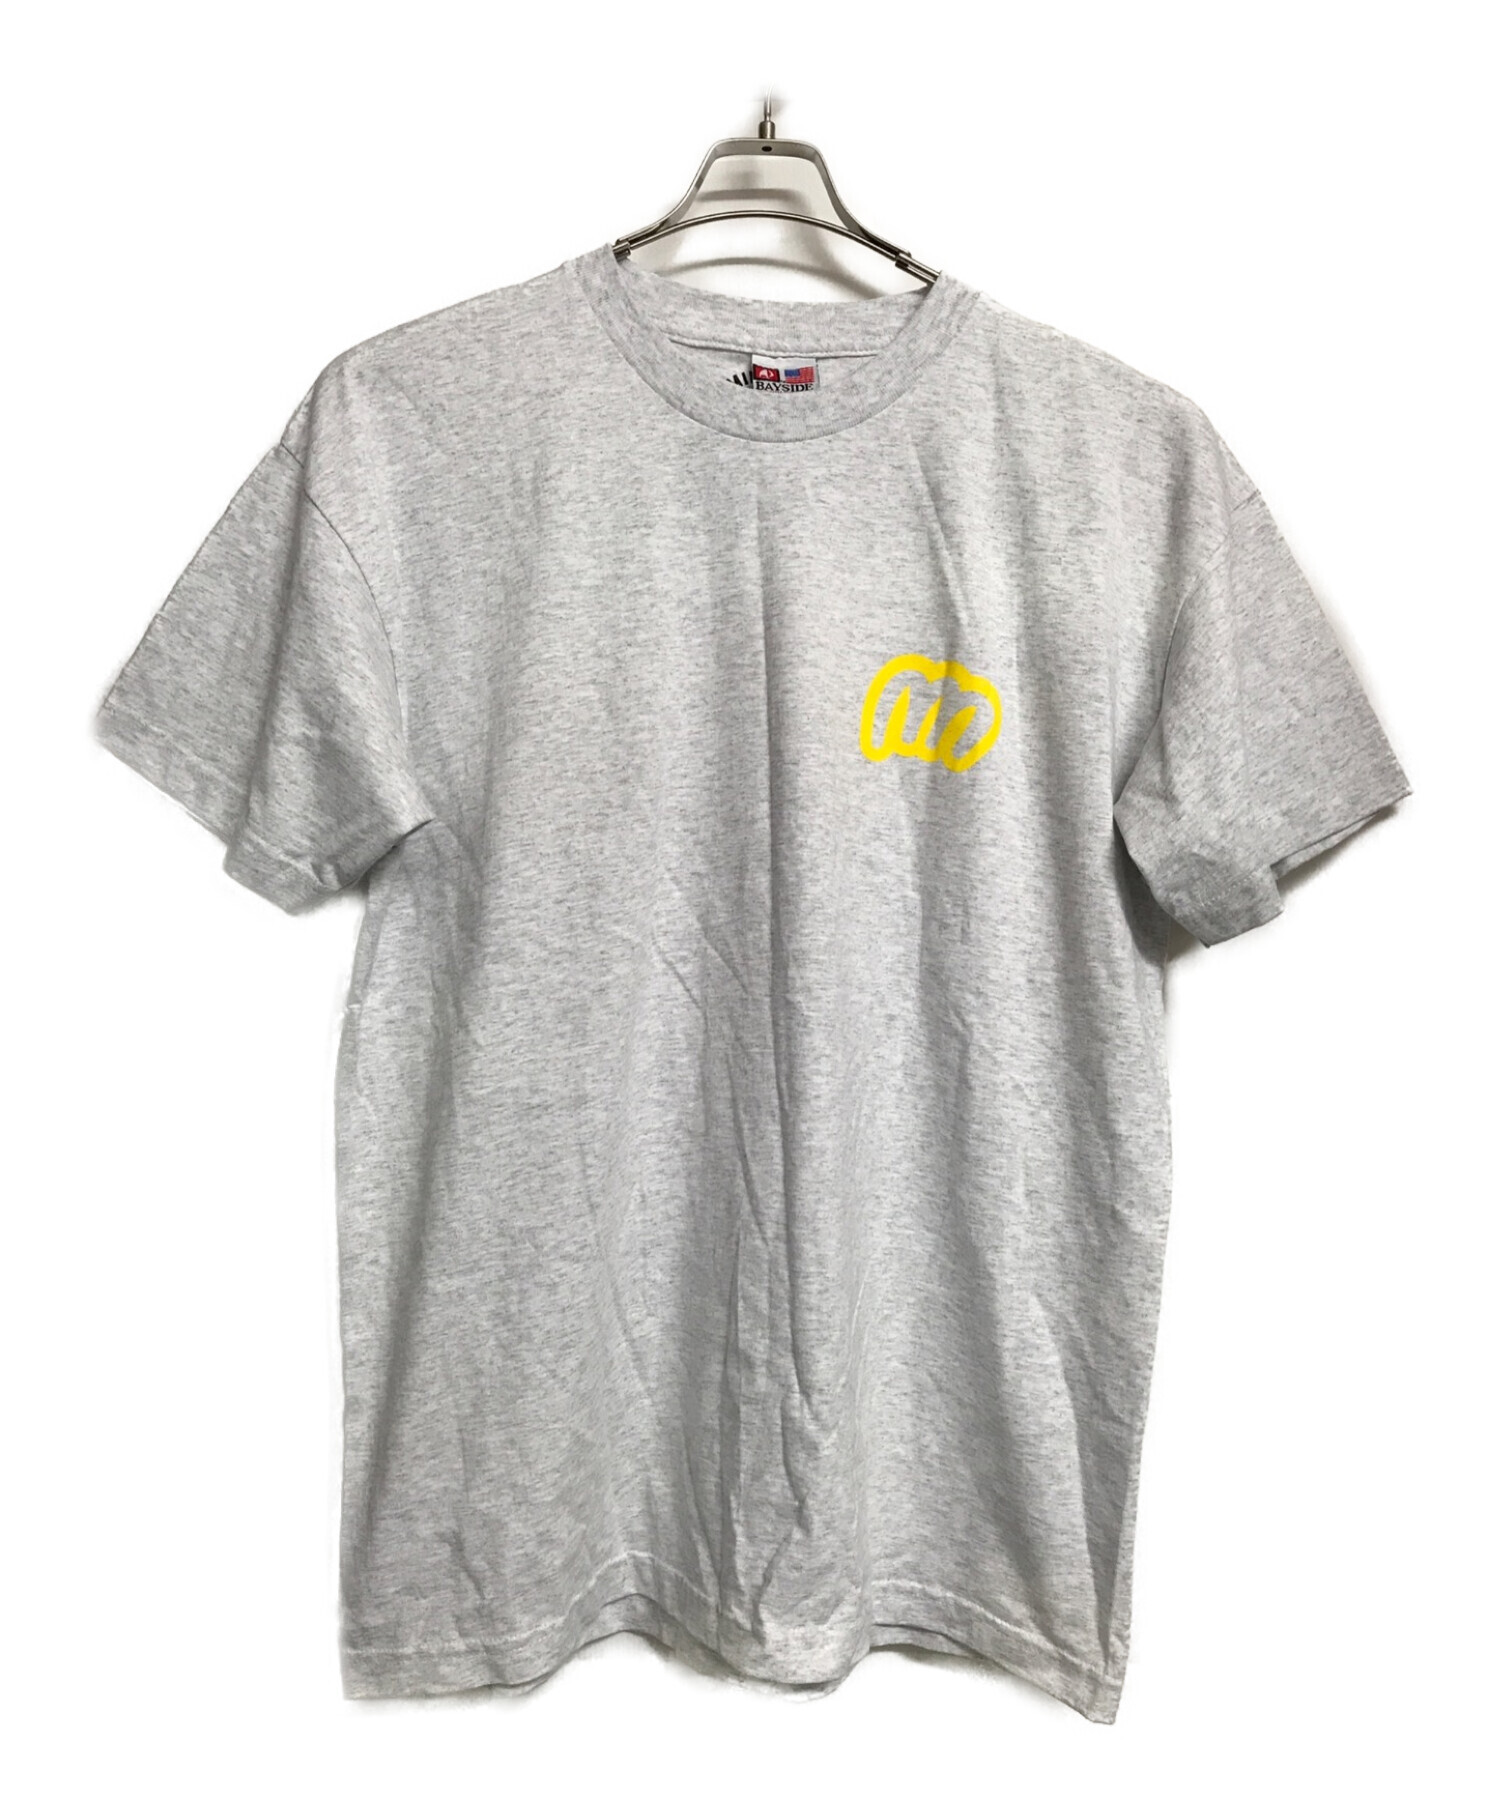 MINNANO (ミンナノ) Tシャツ グレー サイズ:XL